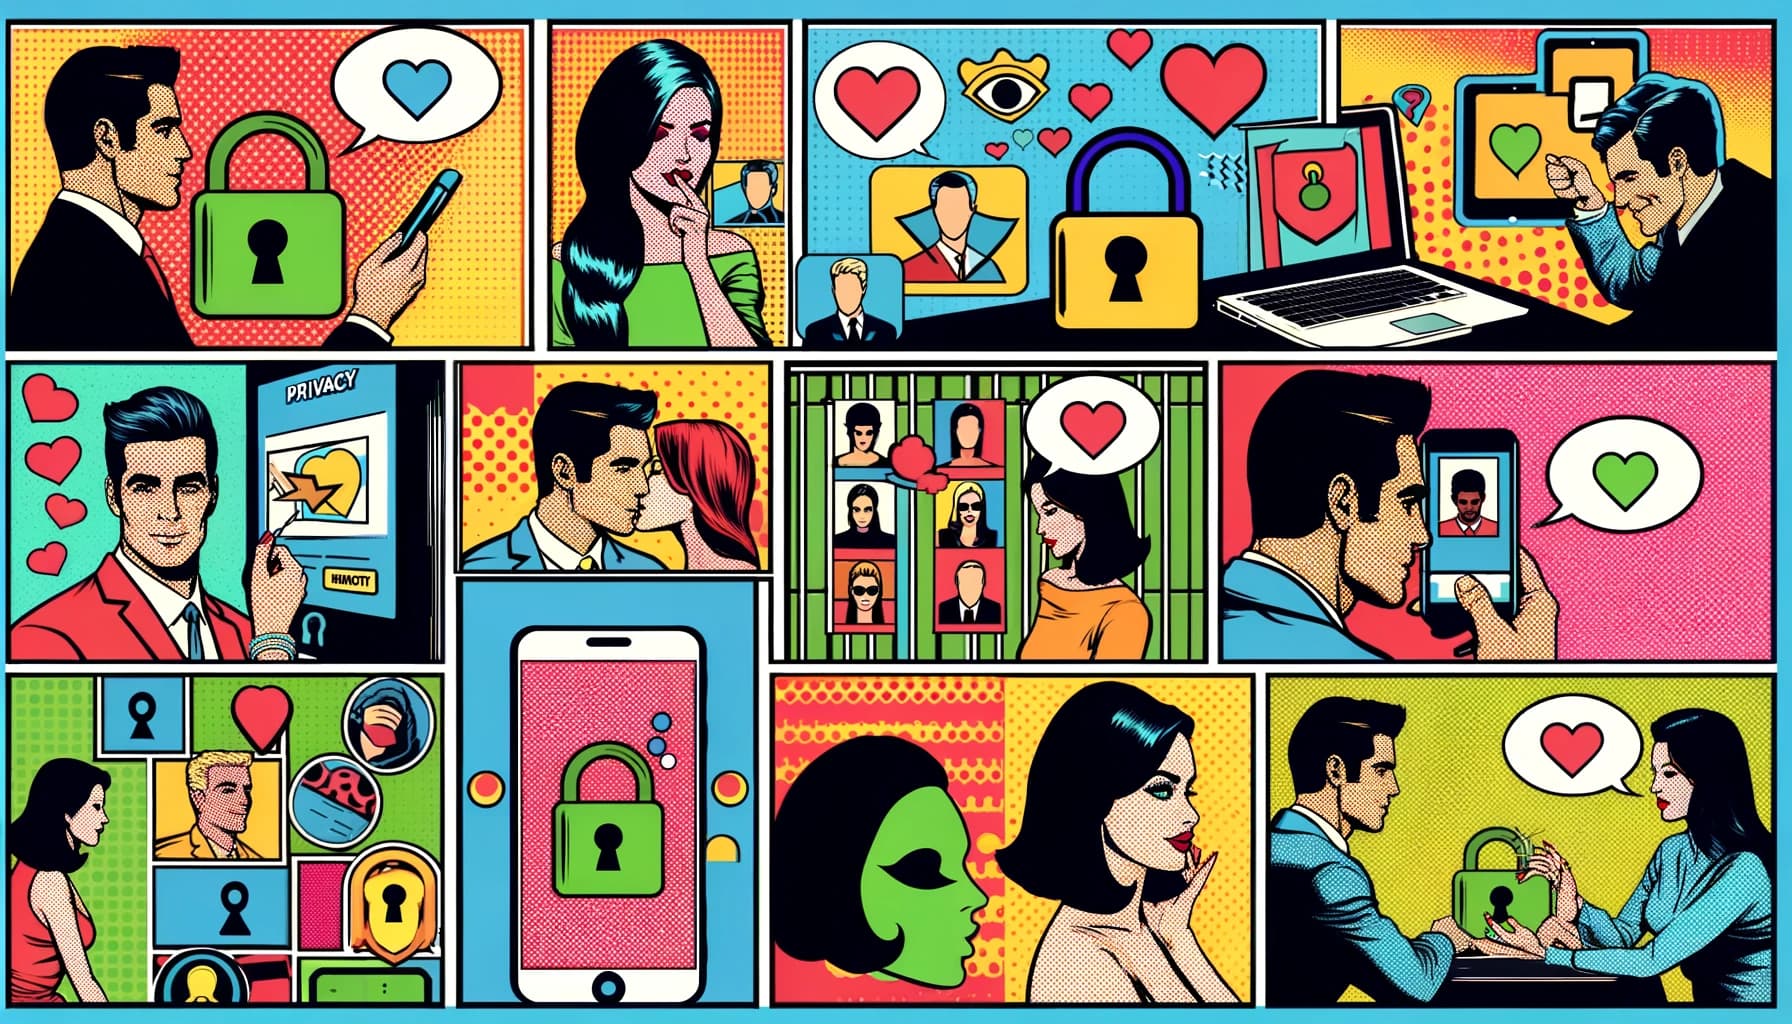 Garder le mystère : Stratégies pour protéger votre vie privée sur les sites de rencontre